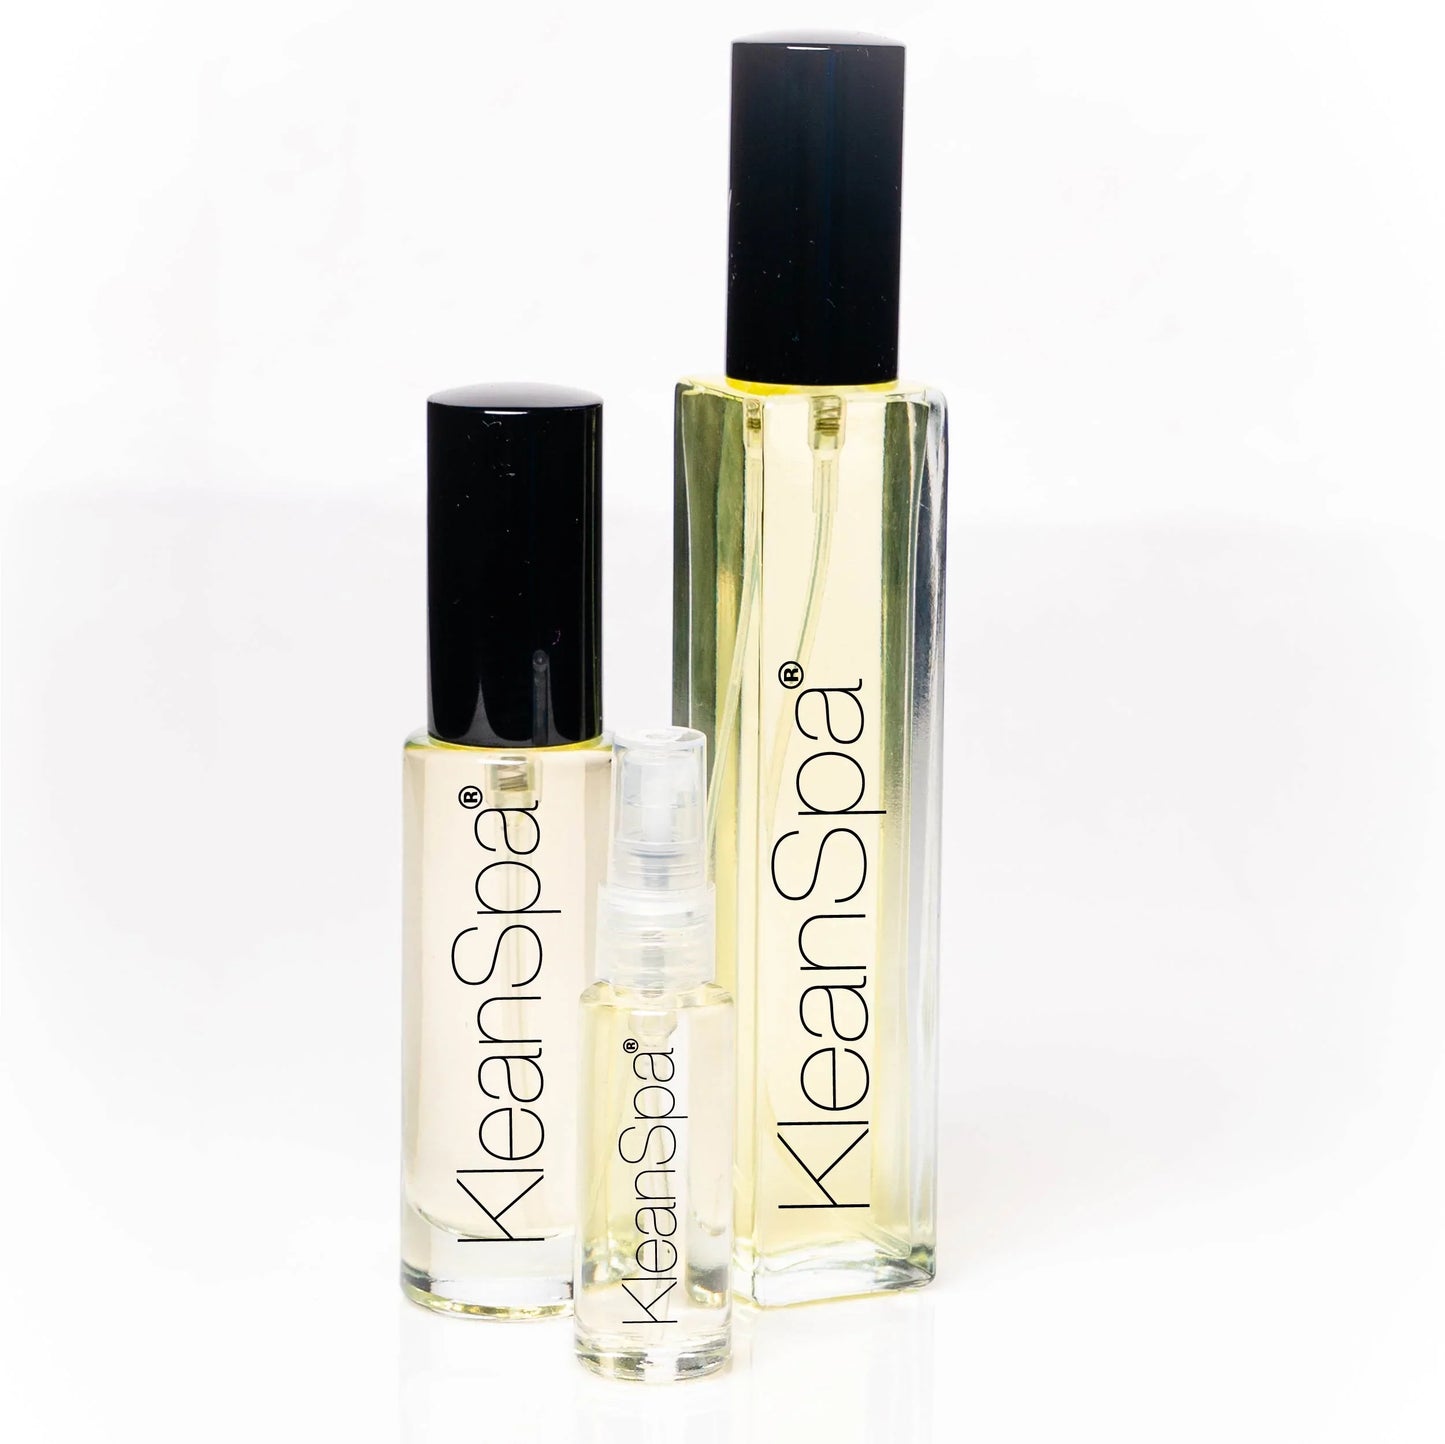 Extrait de Parfum (35% fragrance): Cecile